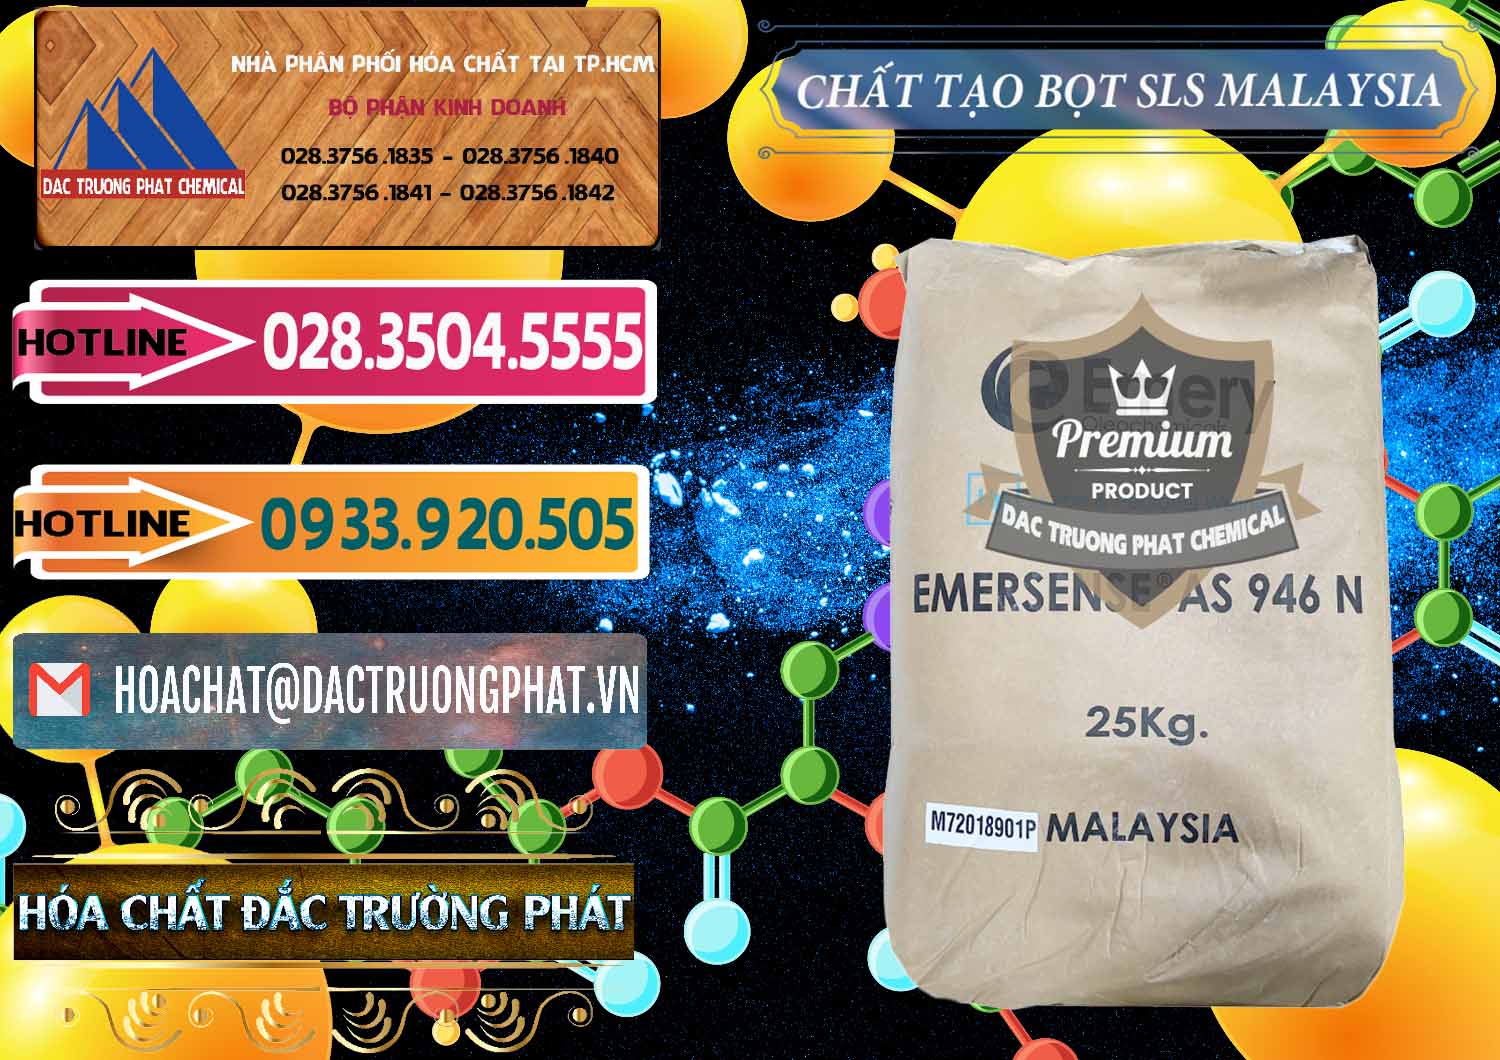 Công ty cung ứng - bán Chất Tạo Bọt SLS Emery - Emersense AS 946N Mã Lai Malaysia - 0423 - Chuyên bán và phân phối hóa chất tại TP.HCM - dactruongphat.vn